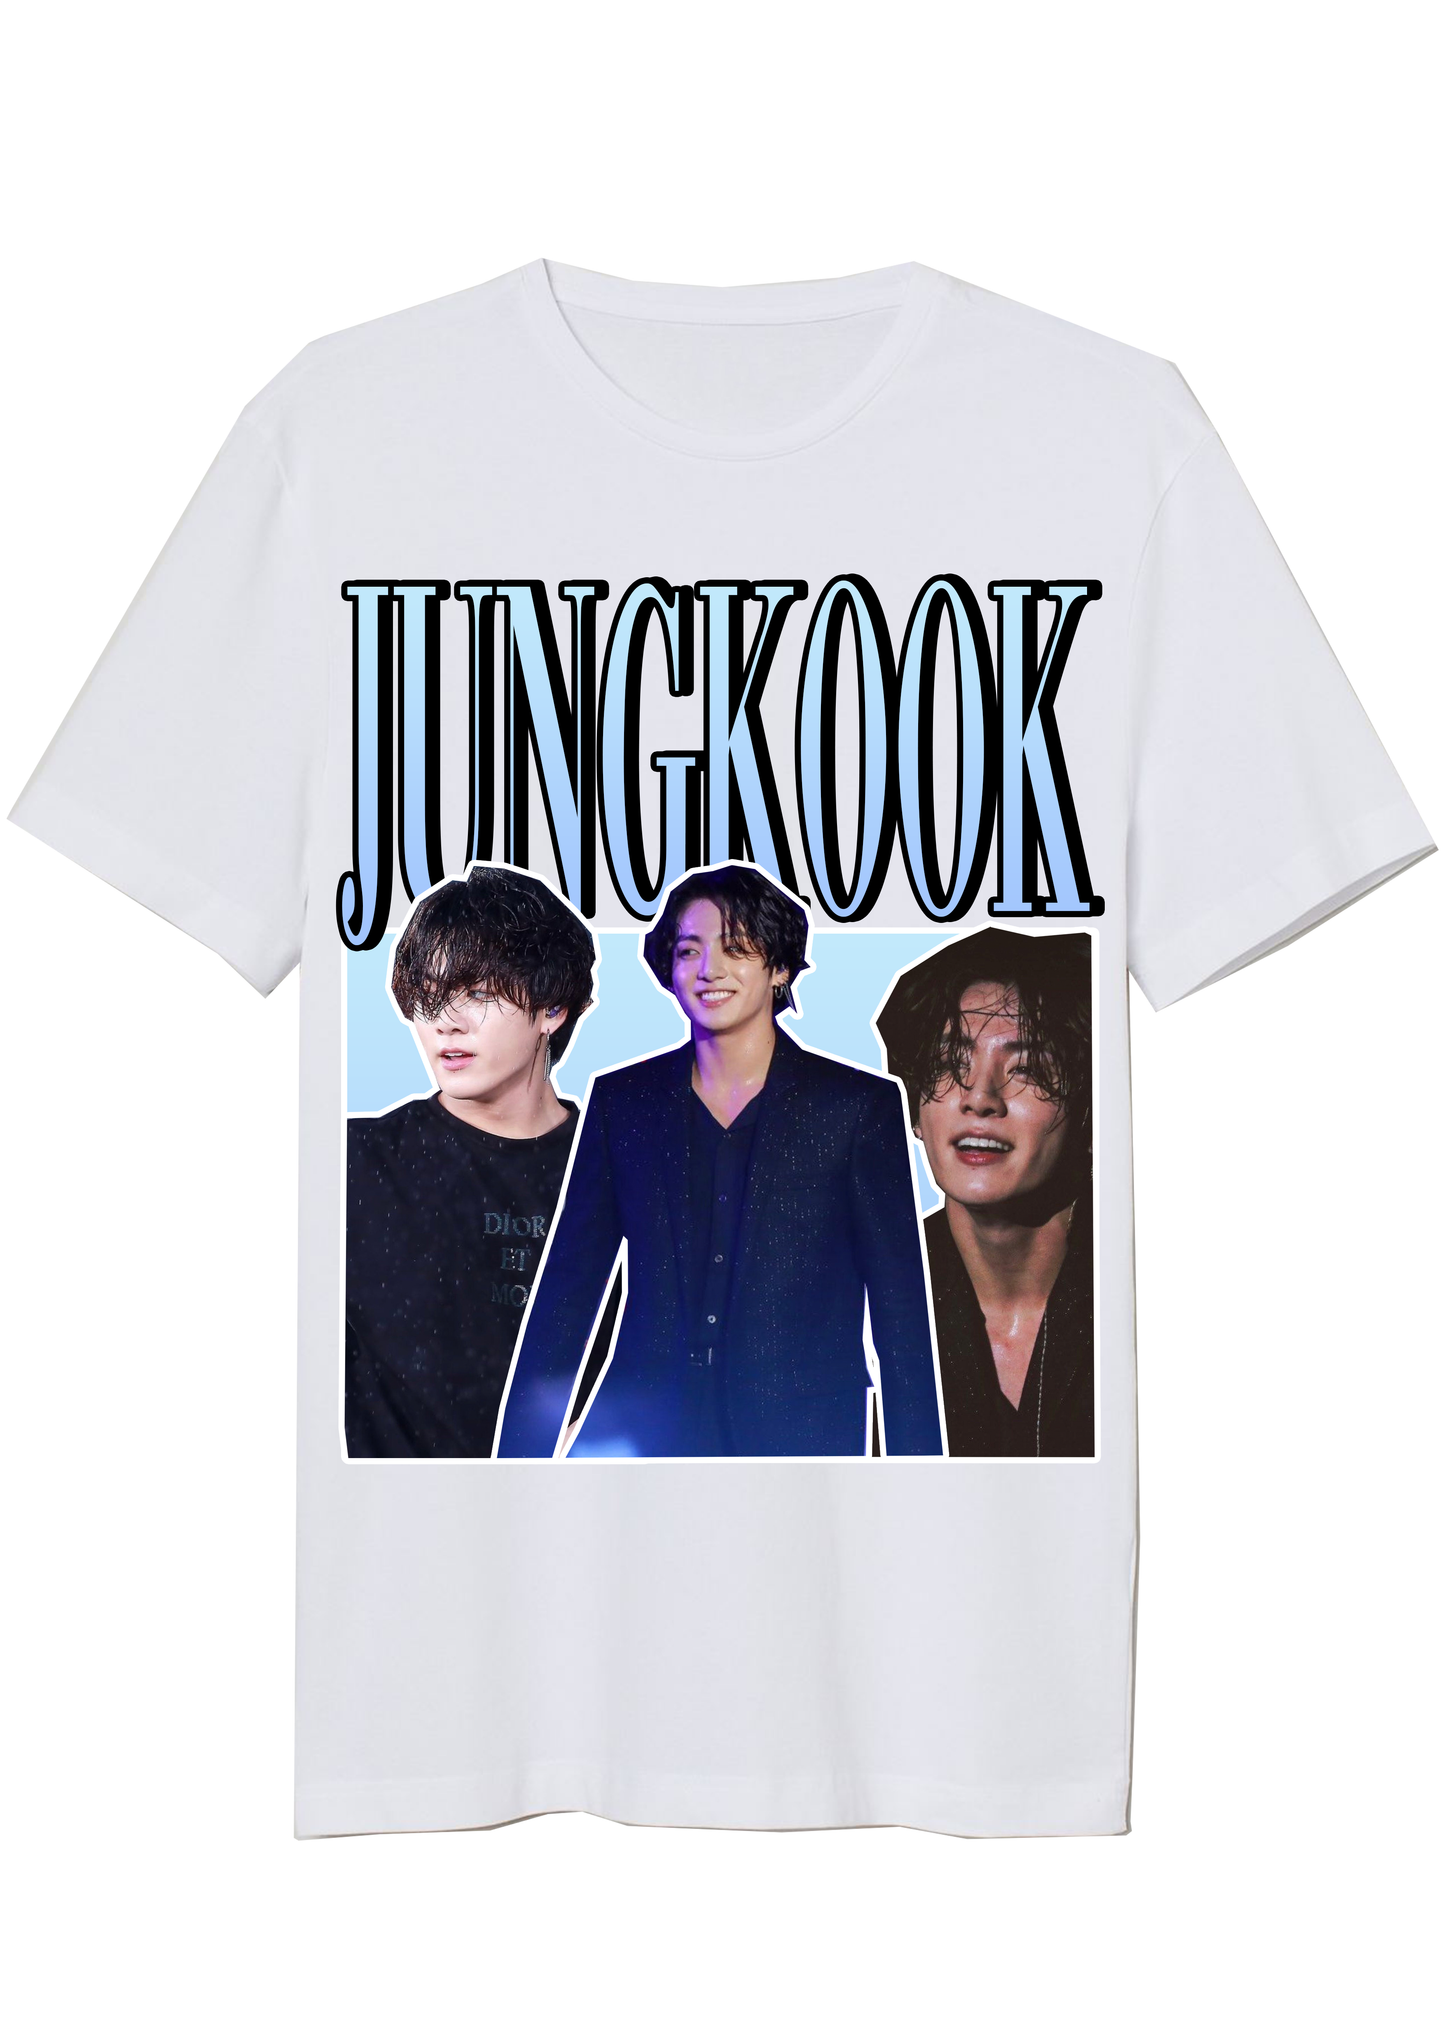 Jungkook BTS Inspired Vintage T-Shirt